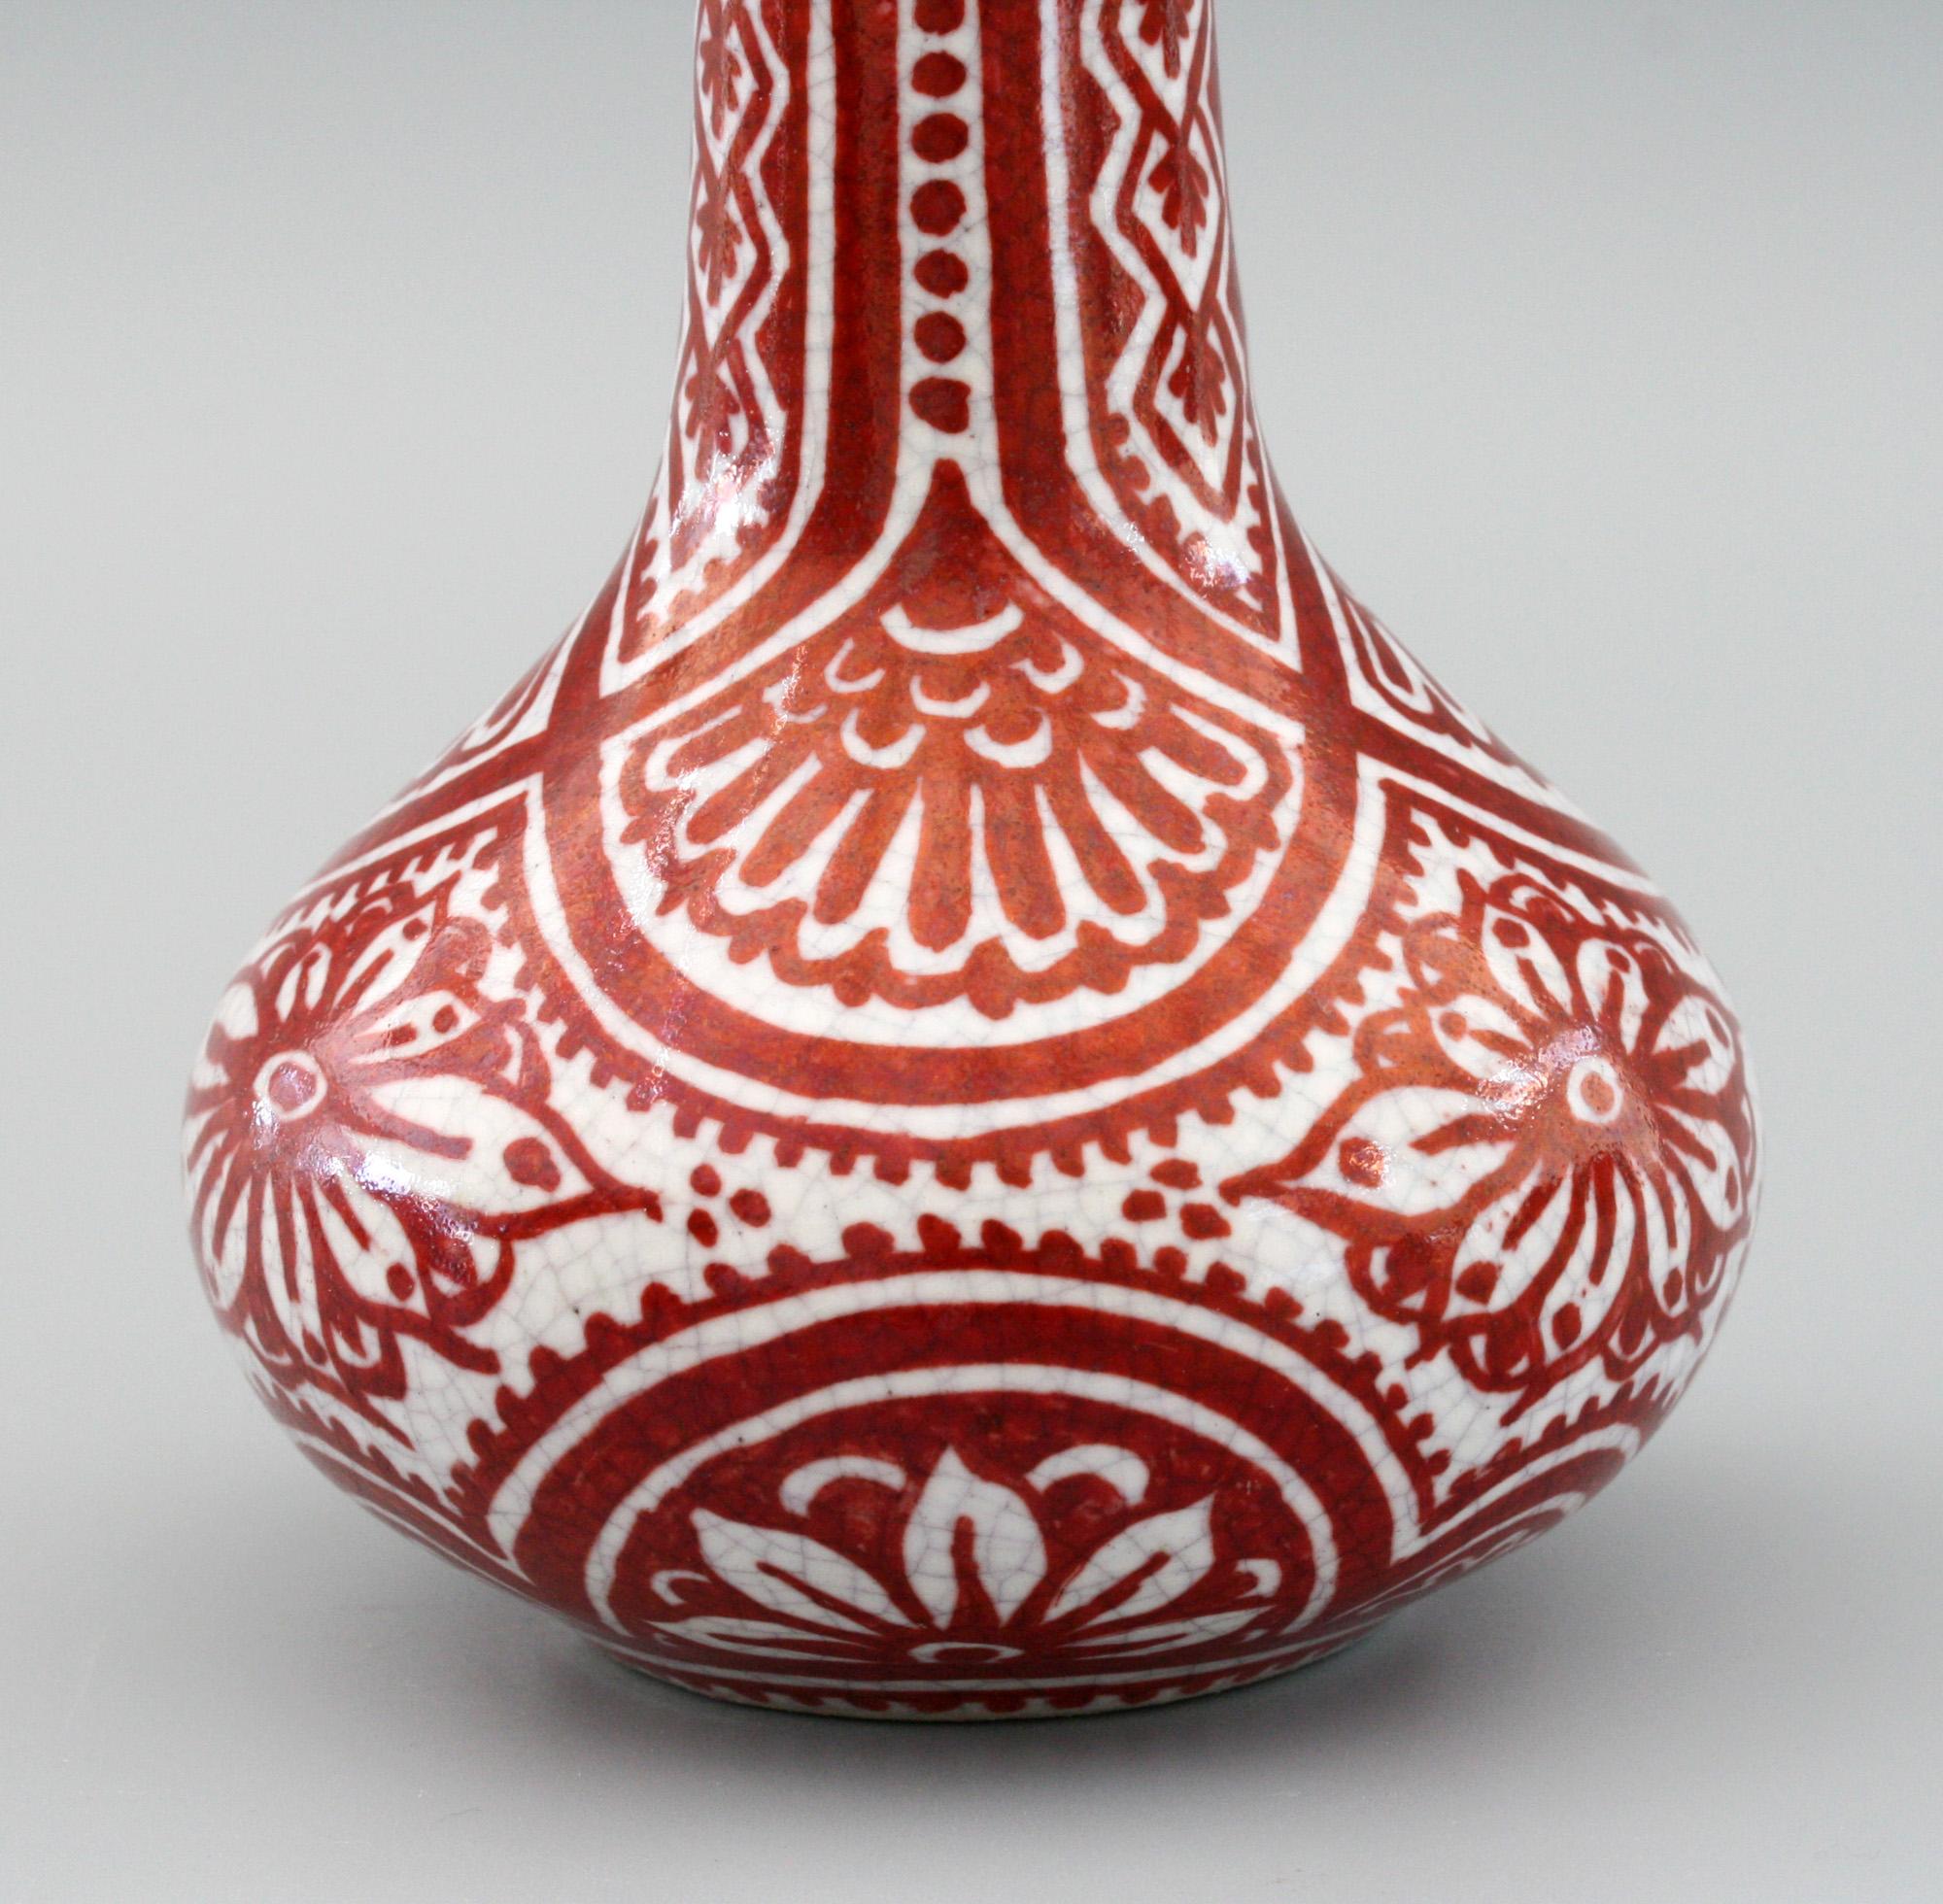 De Porcelyne Fles Dutch Delft Red Craquele Glaze Pottery Vase 1